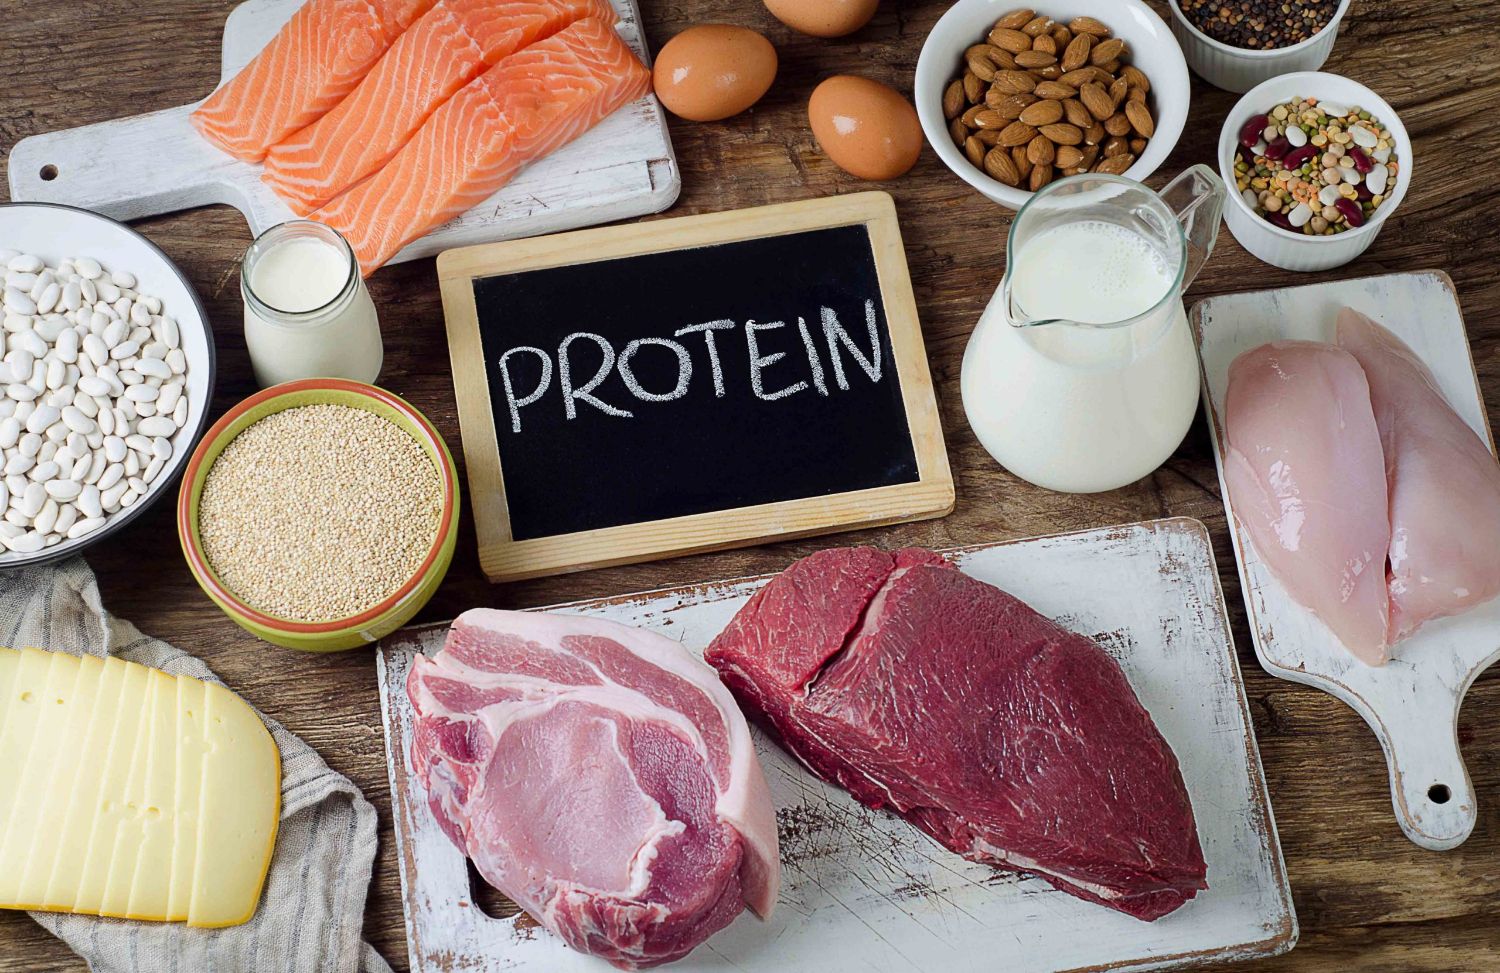 Chế độ ăn protein giảm cân nên bao gồm những loại thực phẩm nào?
